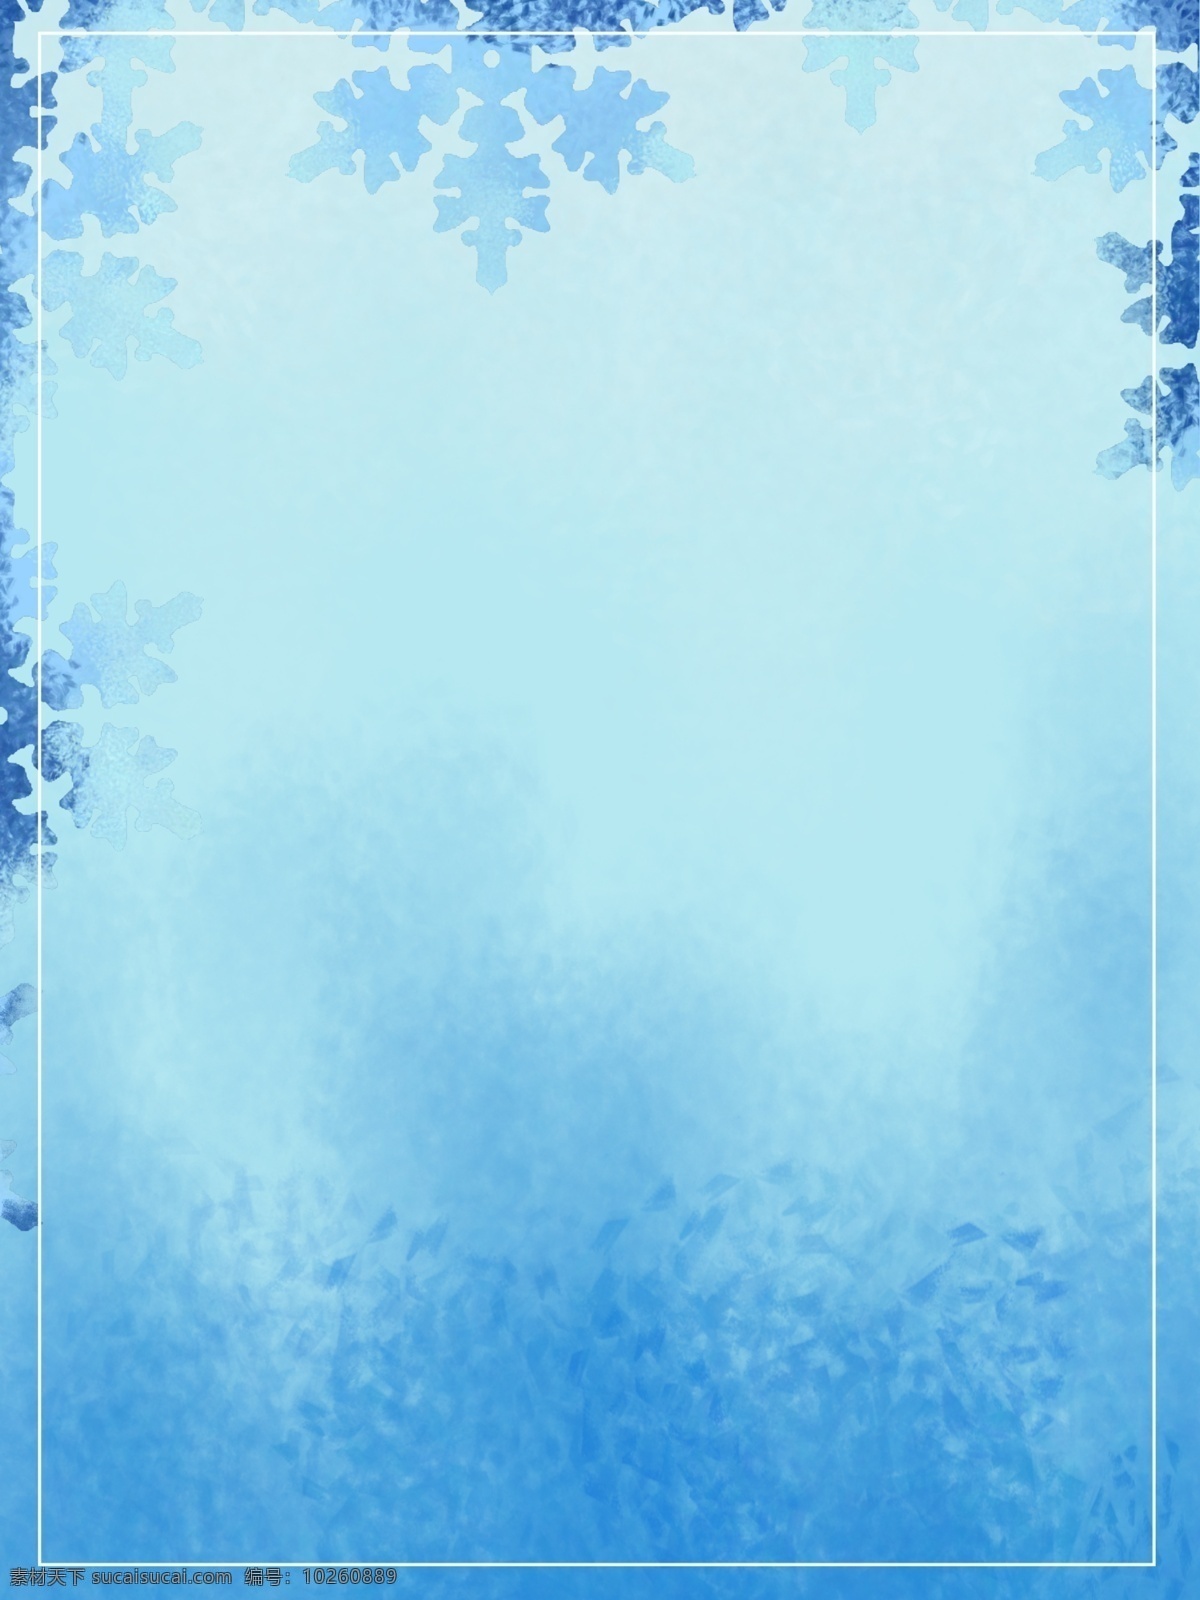 手绘 蓝色 雪花 冬至 节气 背景 蓝色背景 广告背景 背景素材 背景设计 冬至节气 传统节气 中国风节气 二十四节气 冬季大雪